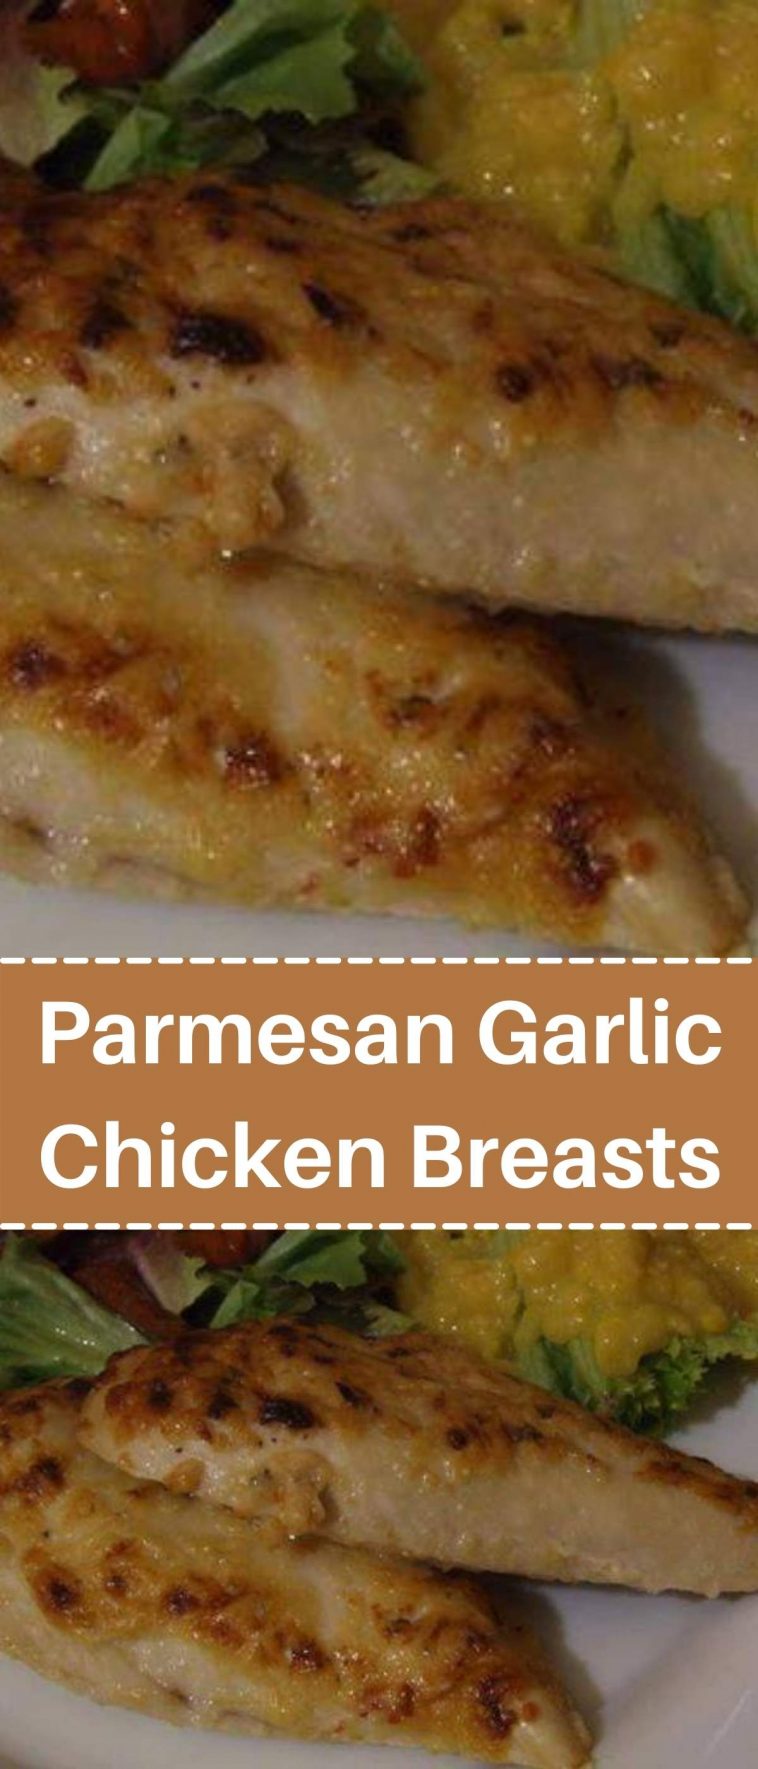 Parmesan Garlic Chicken Breasts